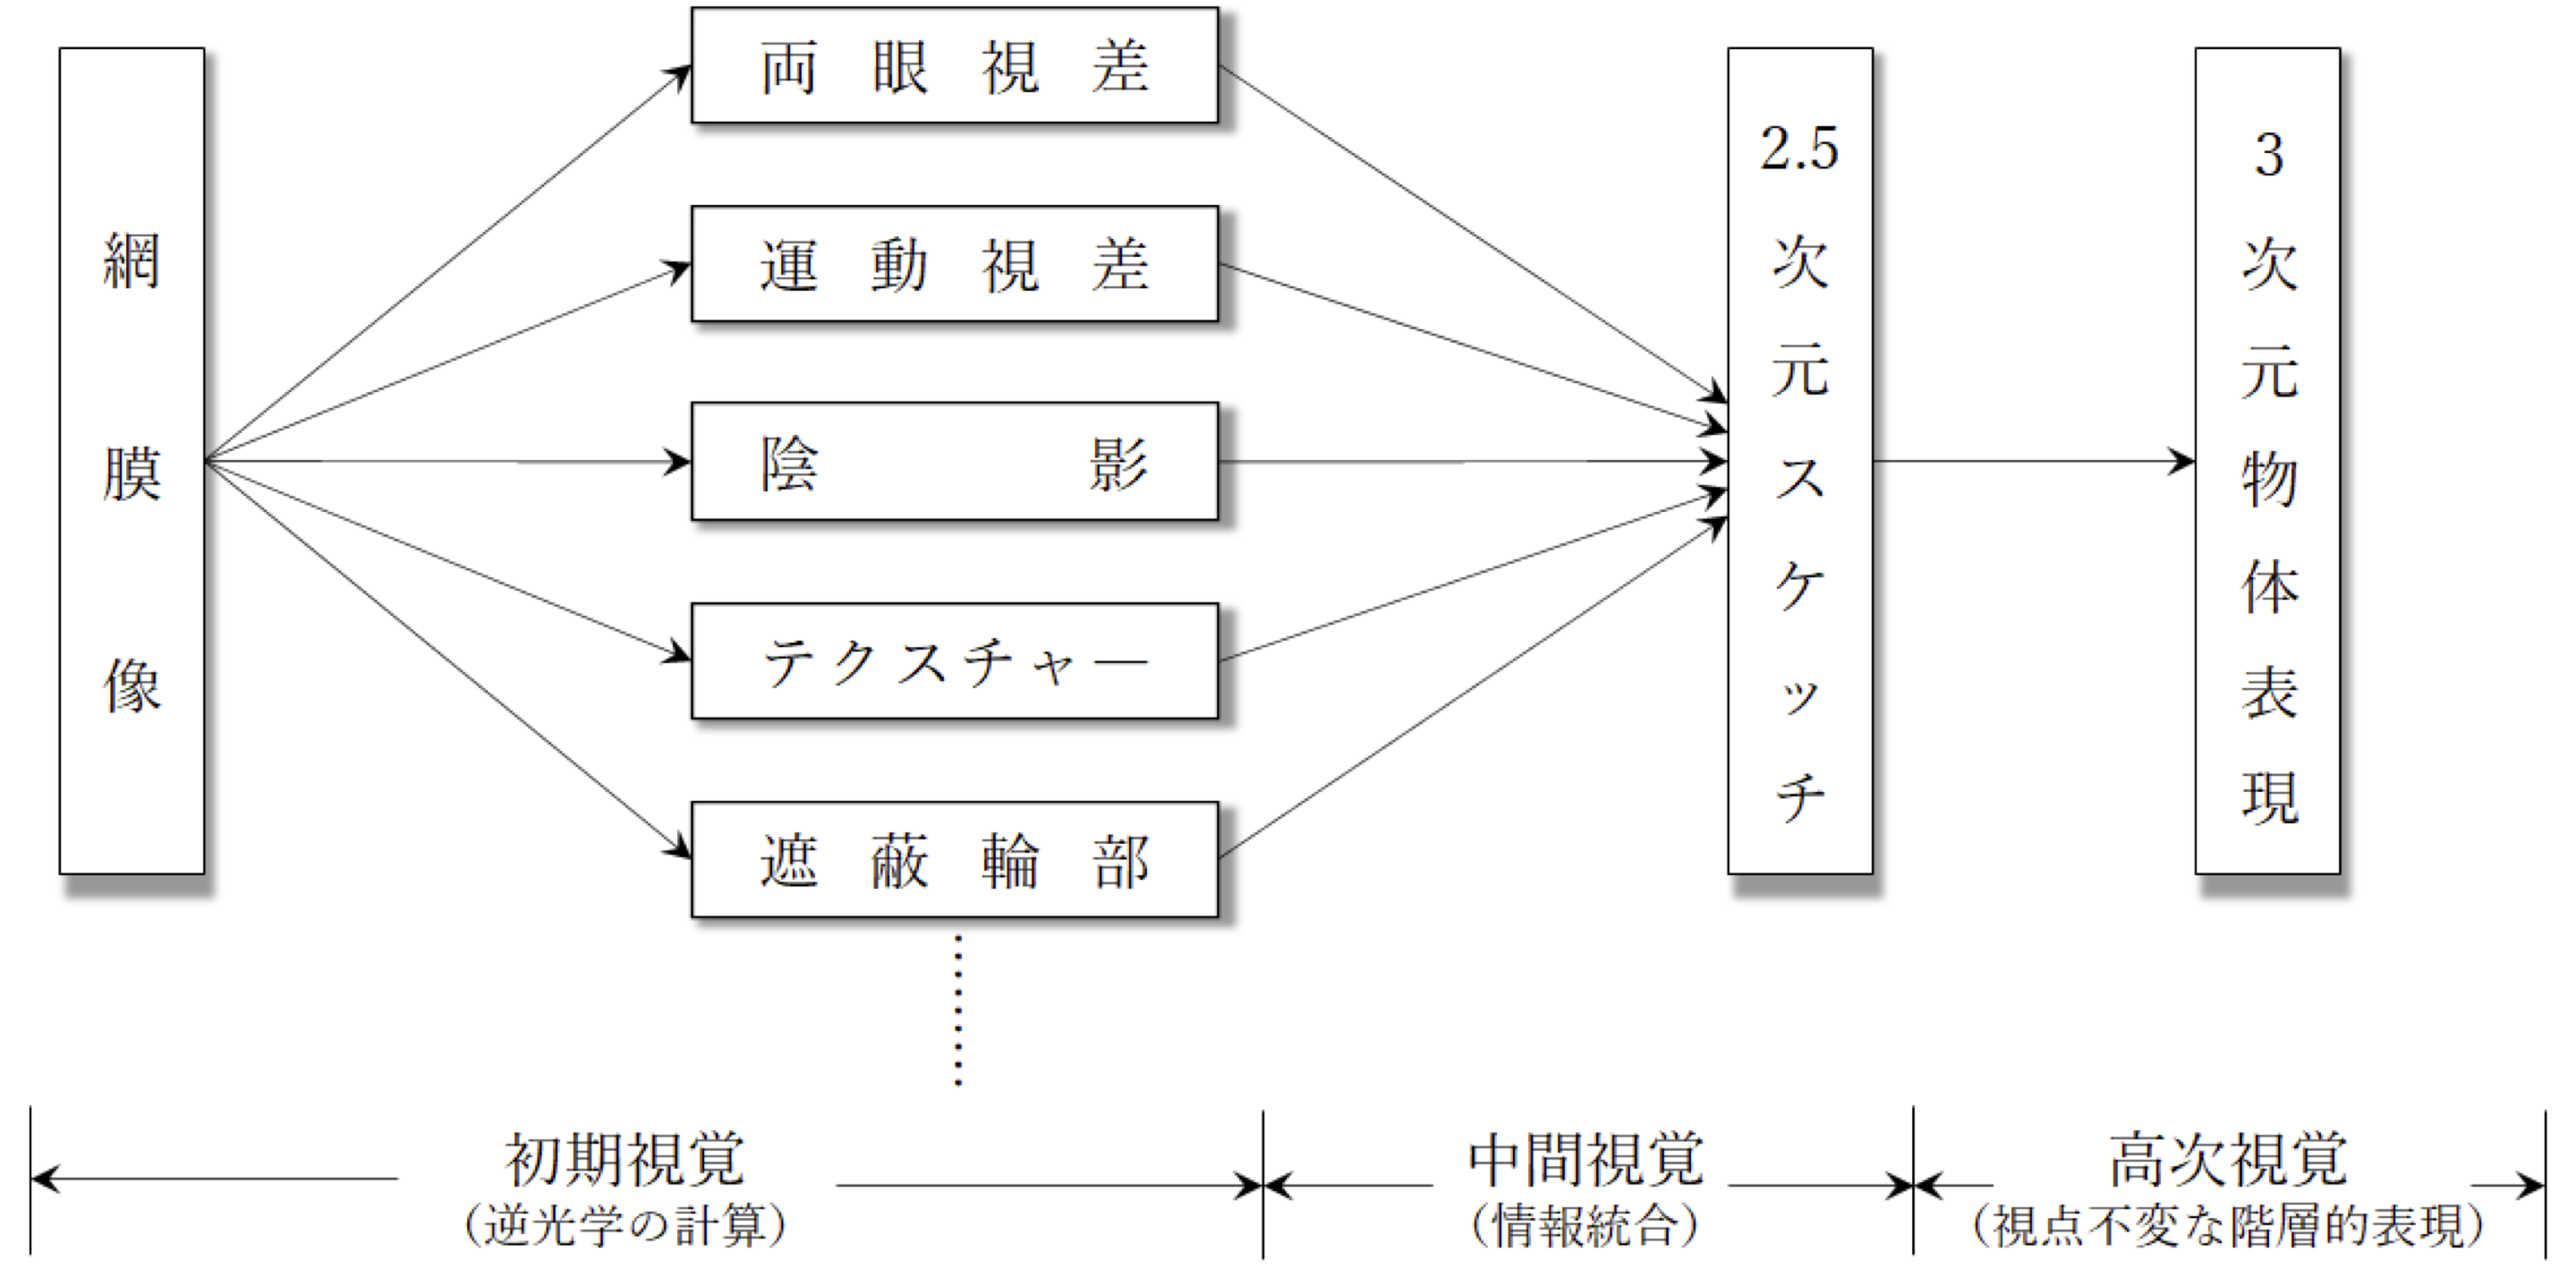 図. Marrの視覚情報処理過程の枠組み